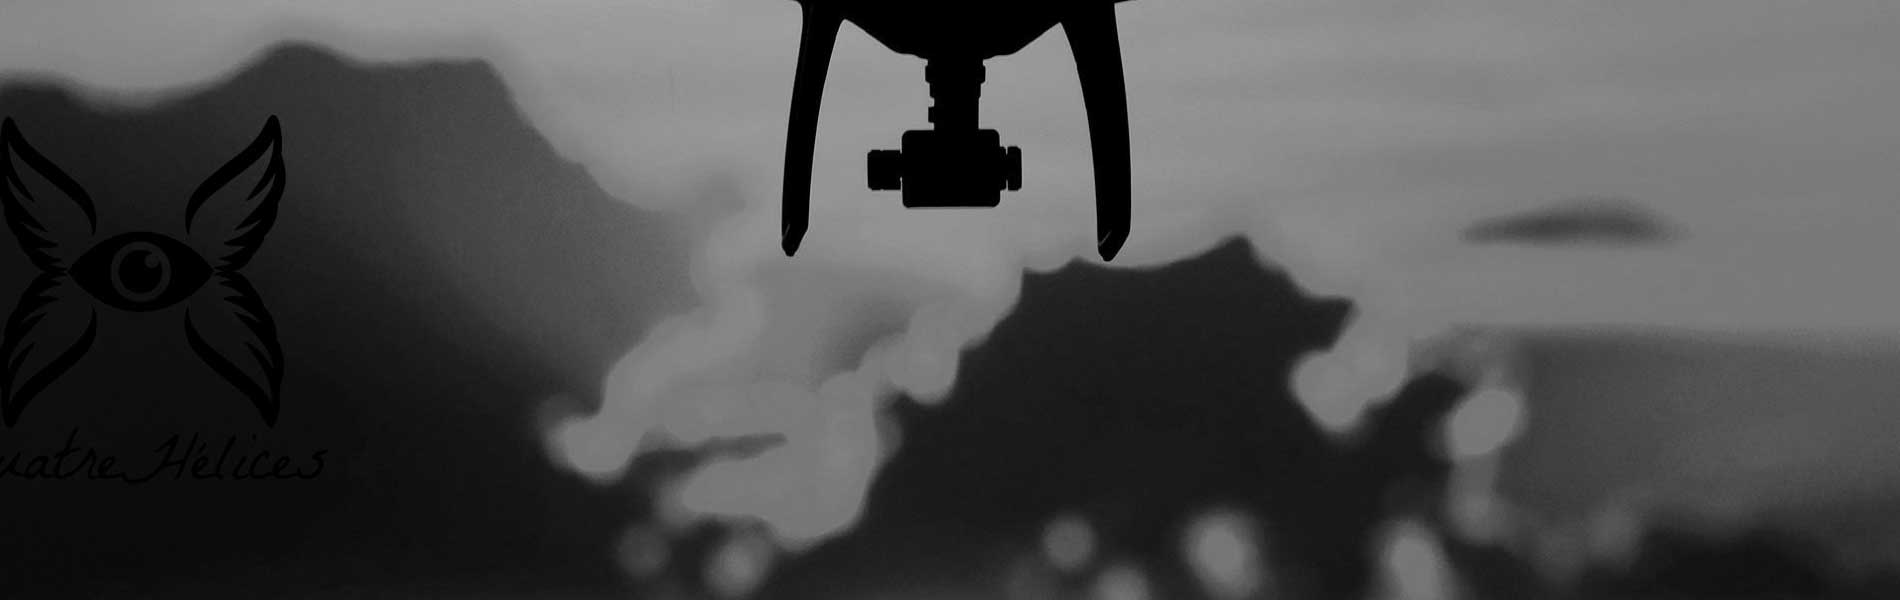 Prise de vue aerienne drone